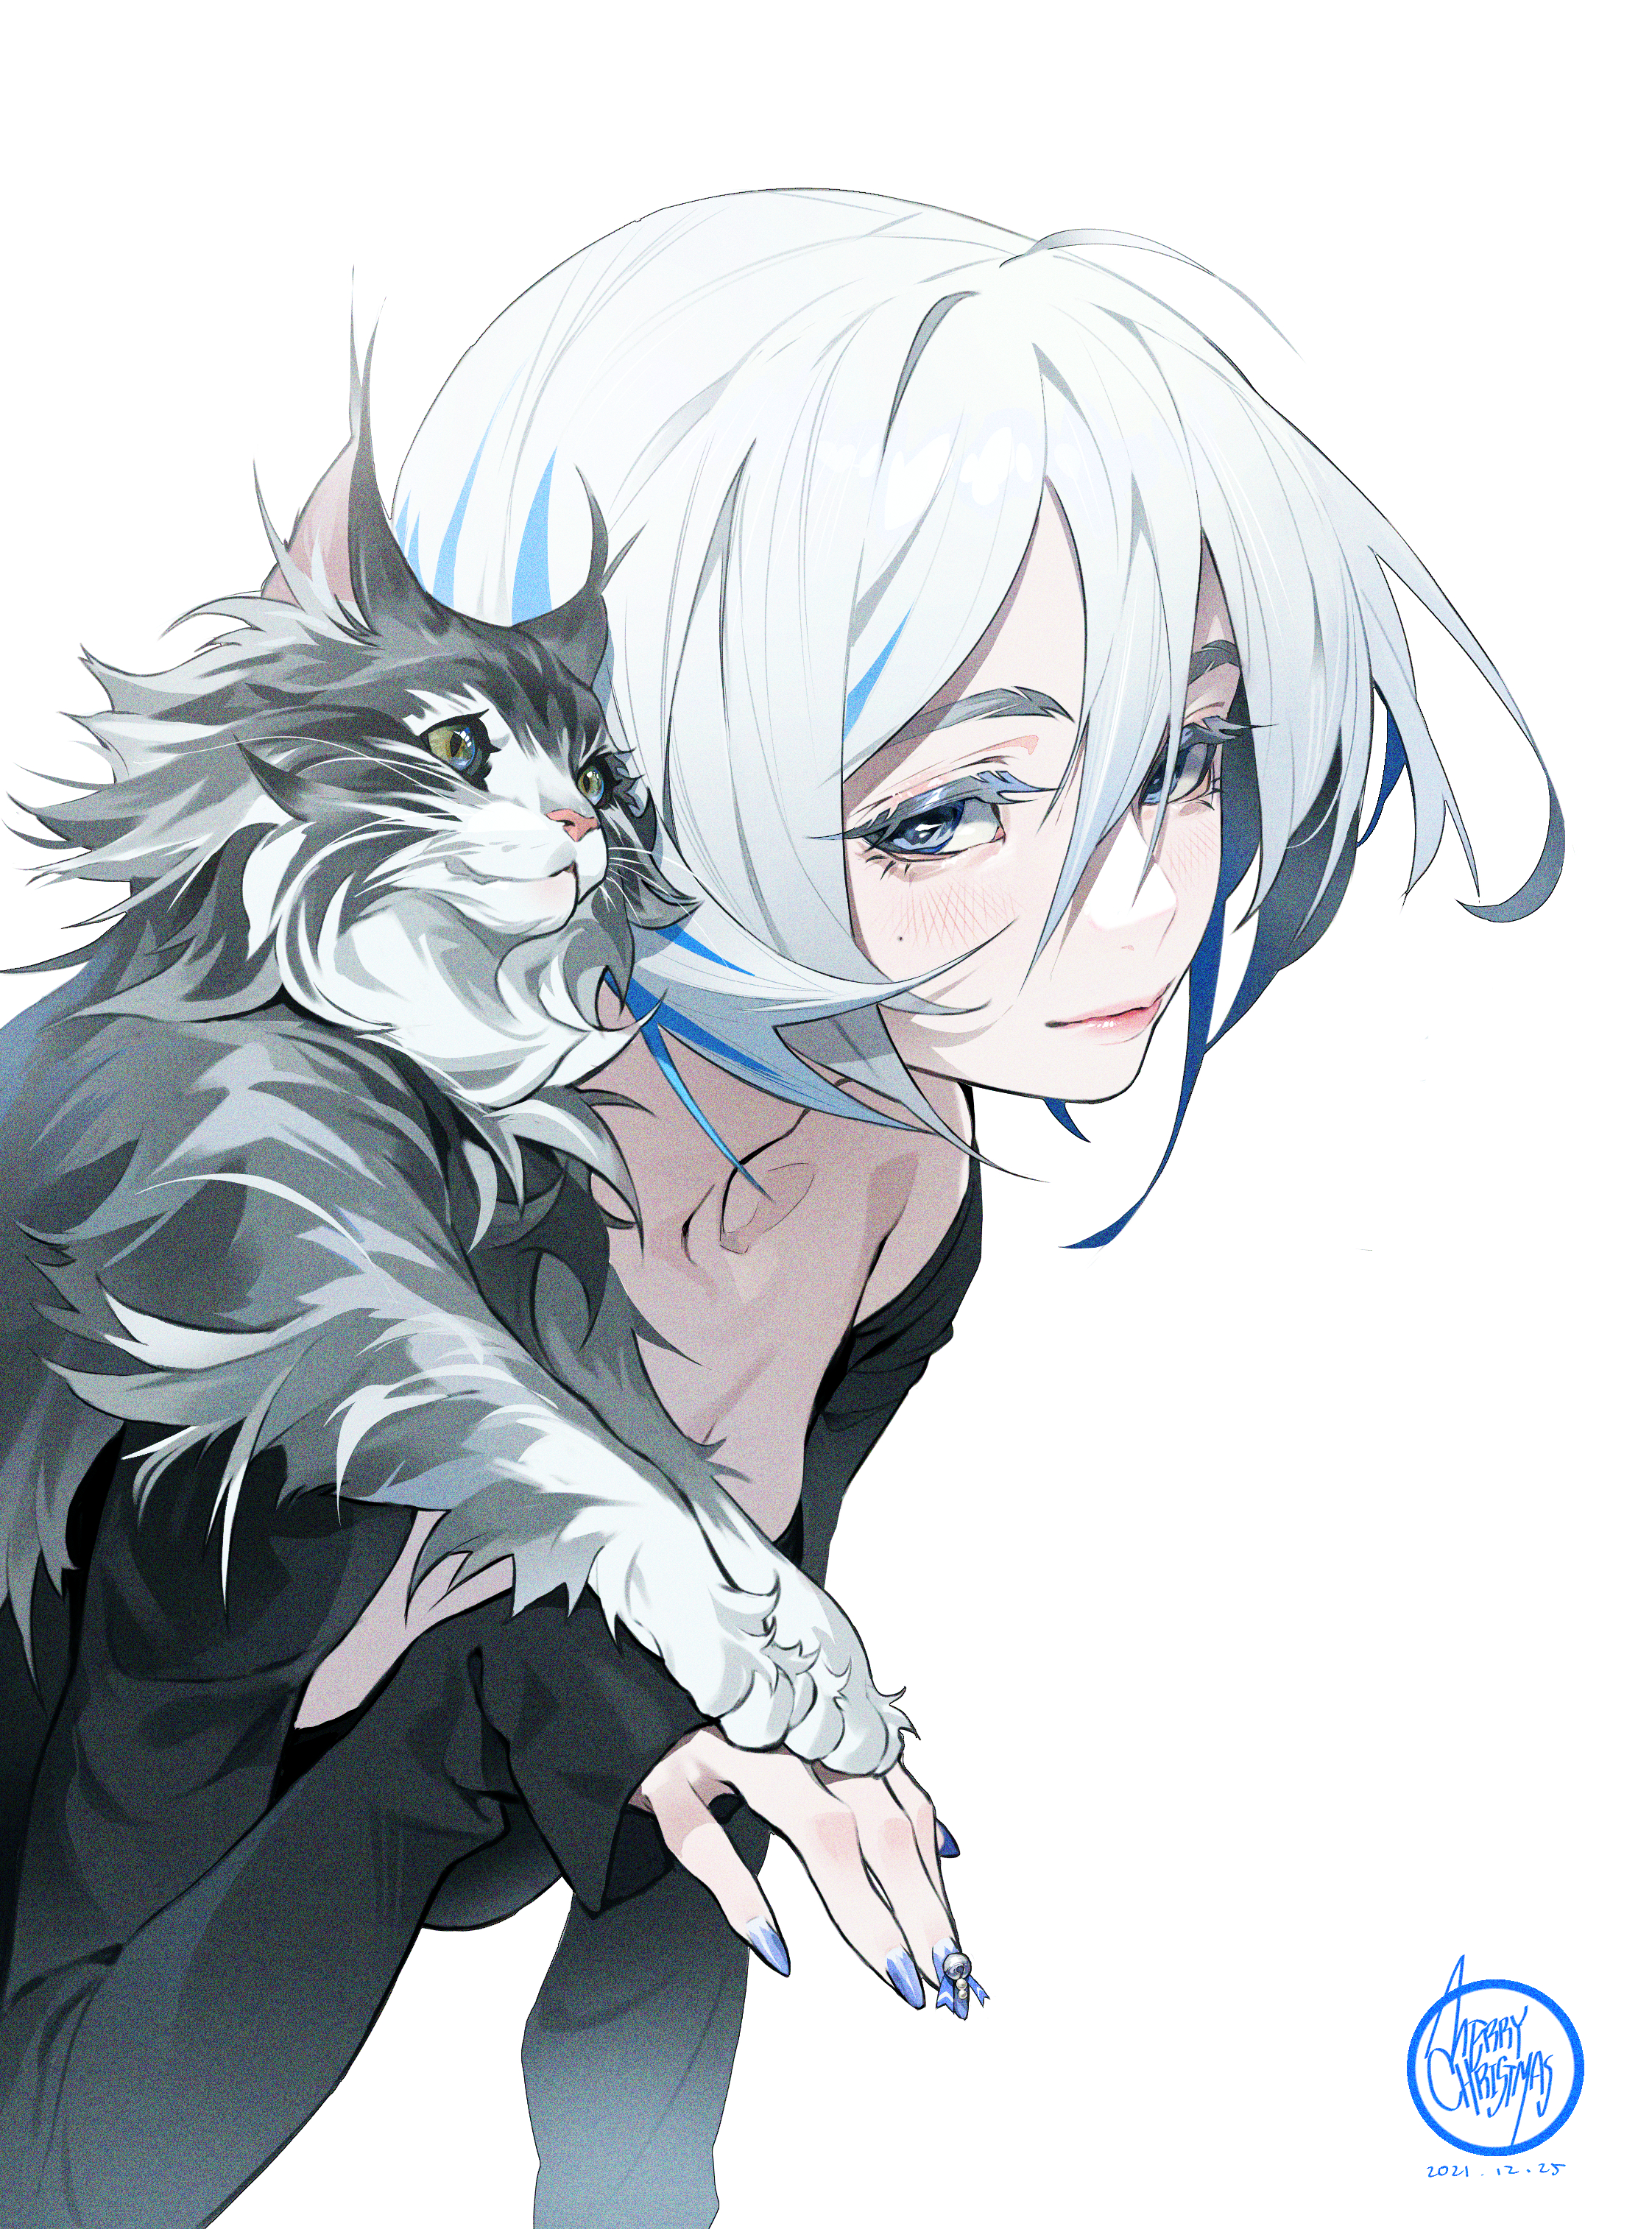 Anime 2244x3028 white hair blue eyes cats anime girls artwork TZ BARD